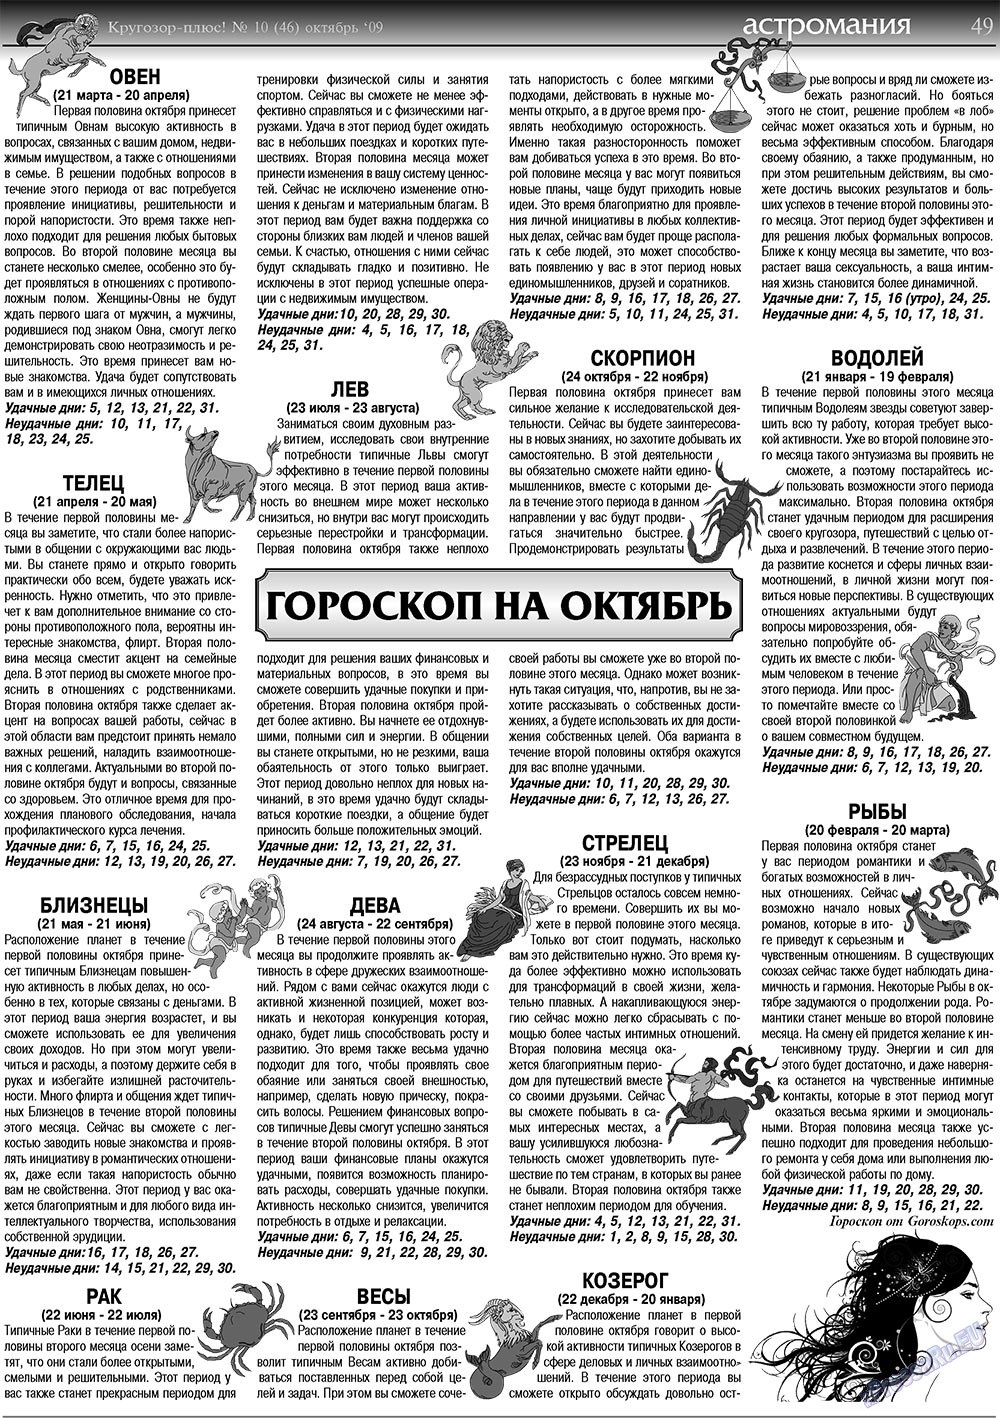 Кругозор плюс!, газета. 2009 №10 стр.49